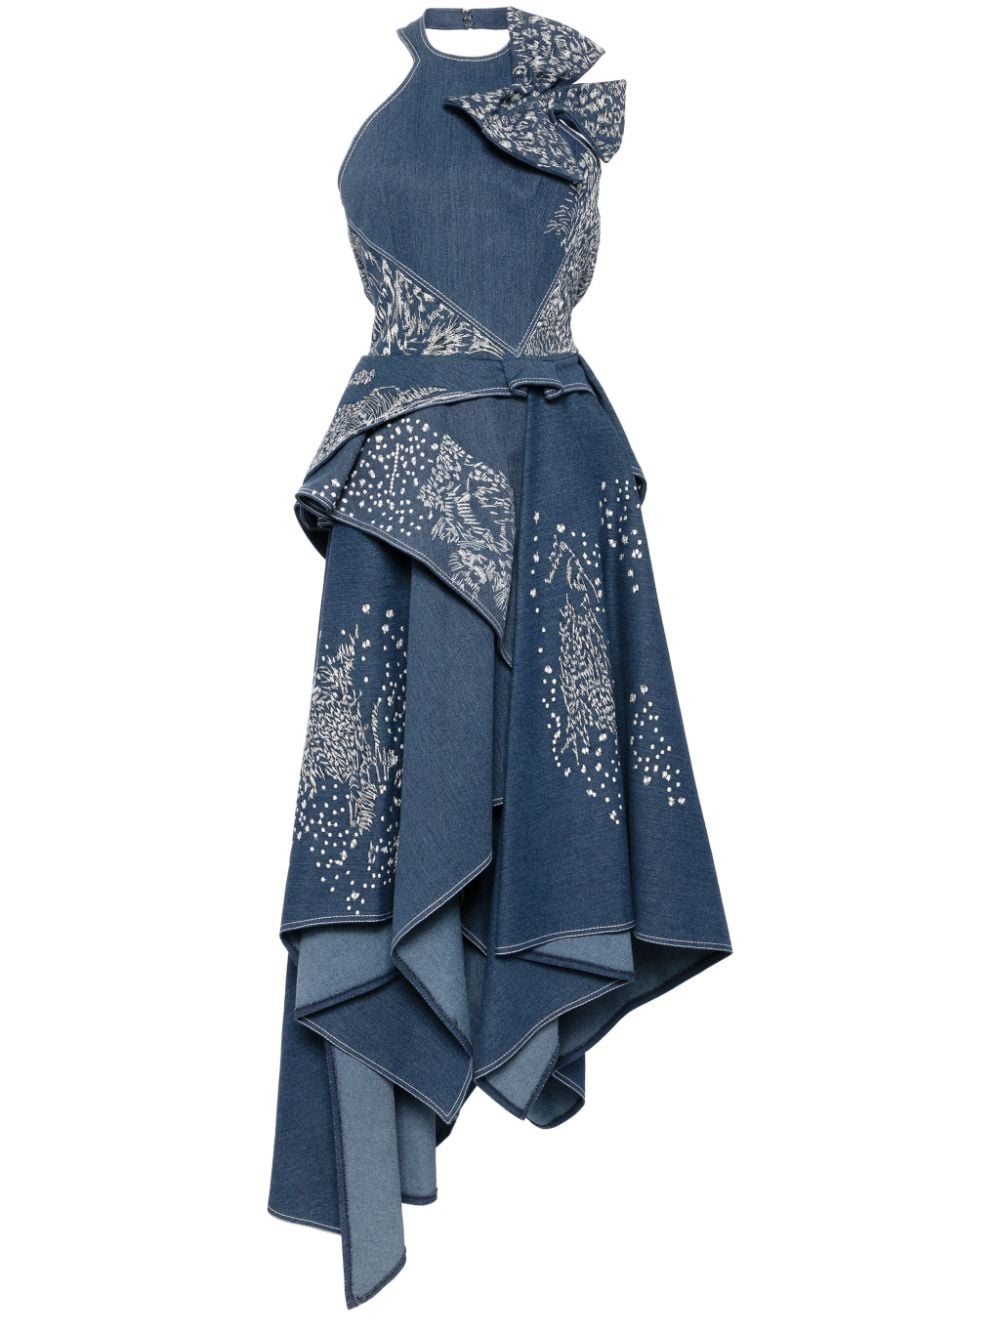 Saiid Kobeisy embroidered denim maxi dress - Blue von Saiid Kobeisy